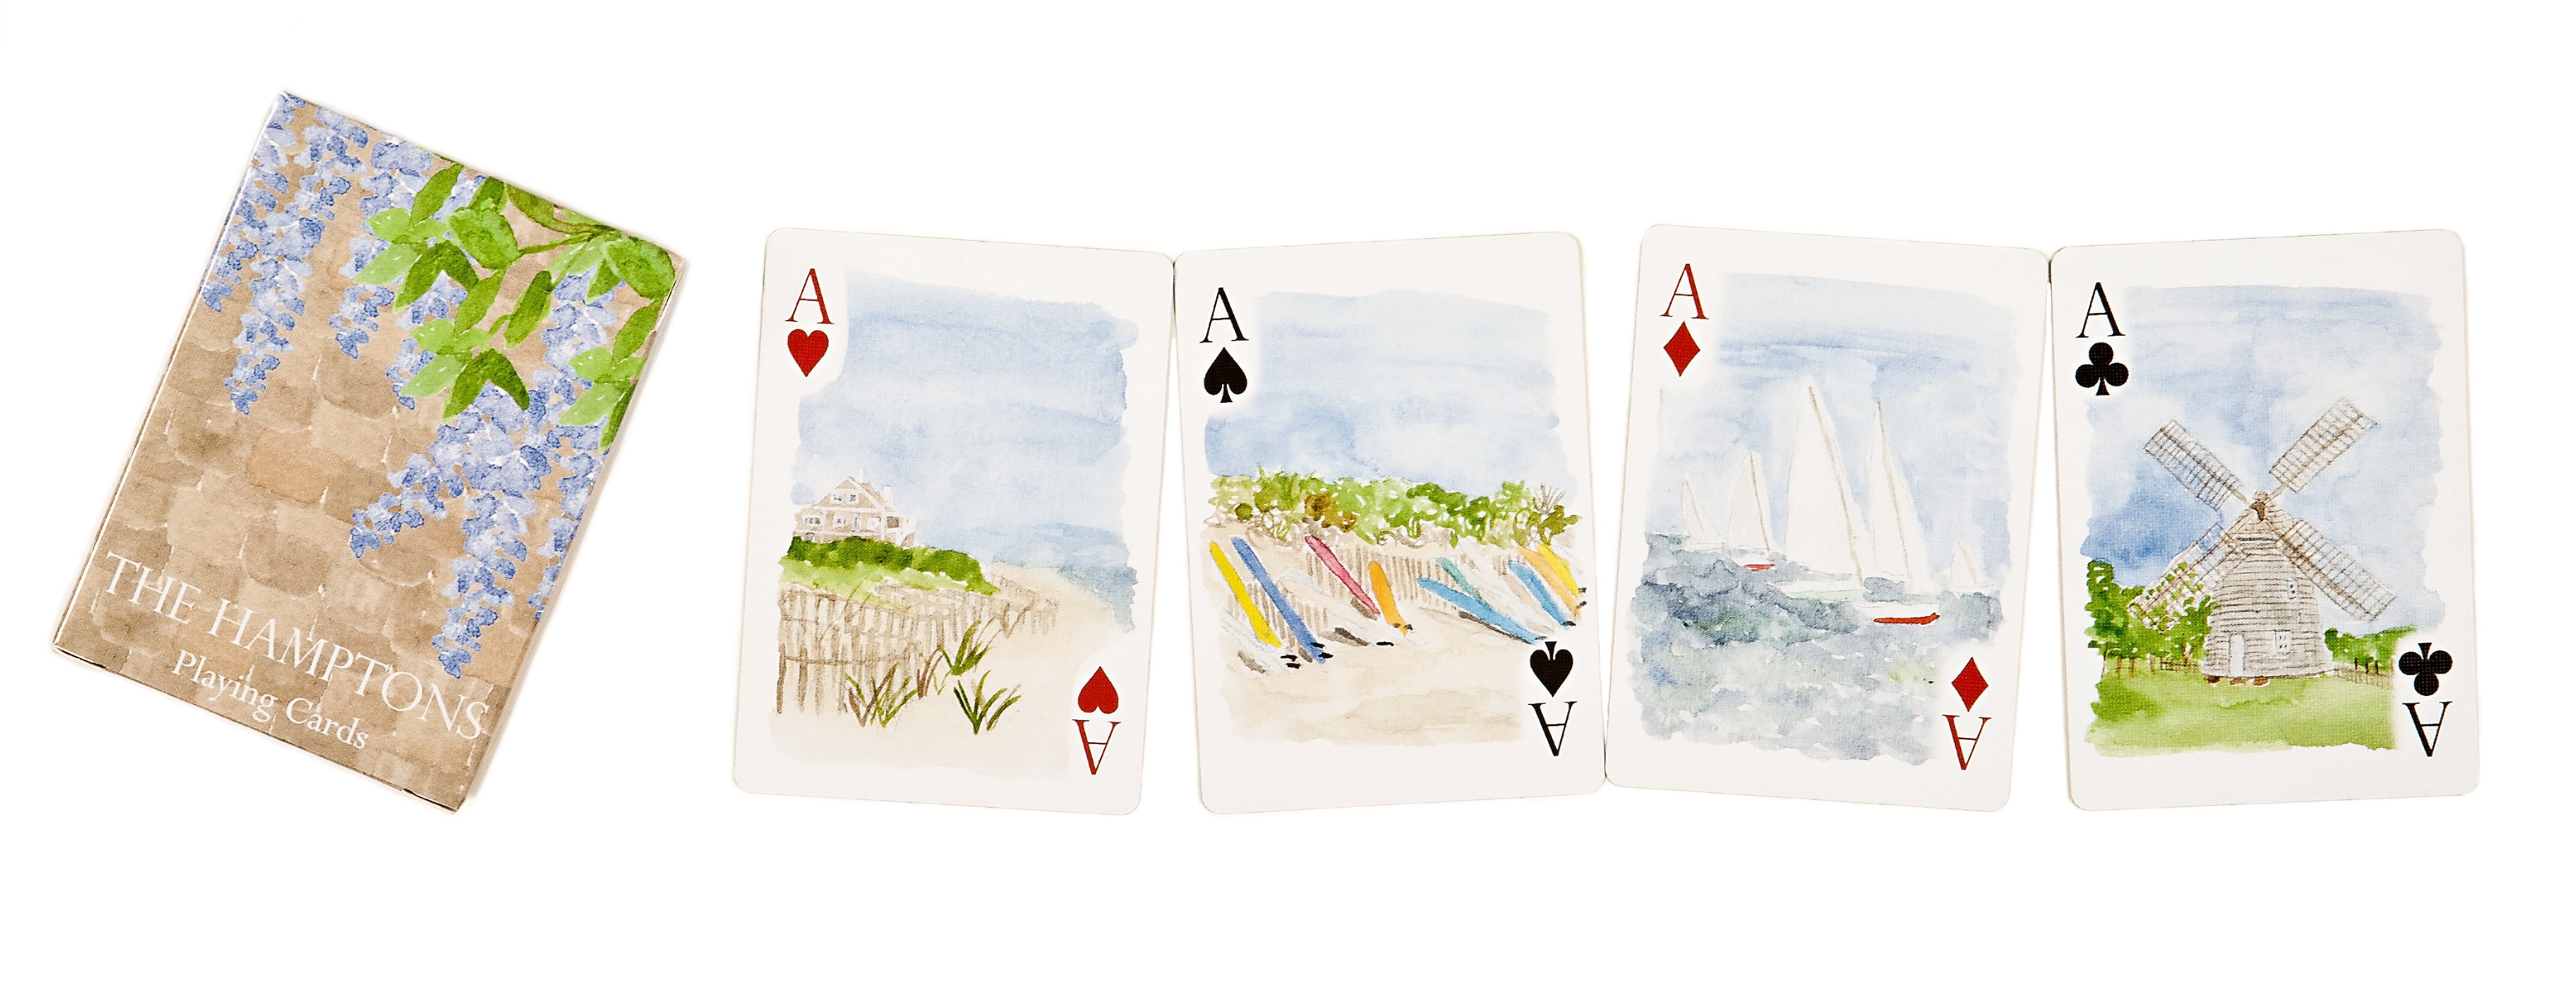 Hamptons Playing Cards